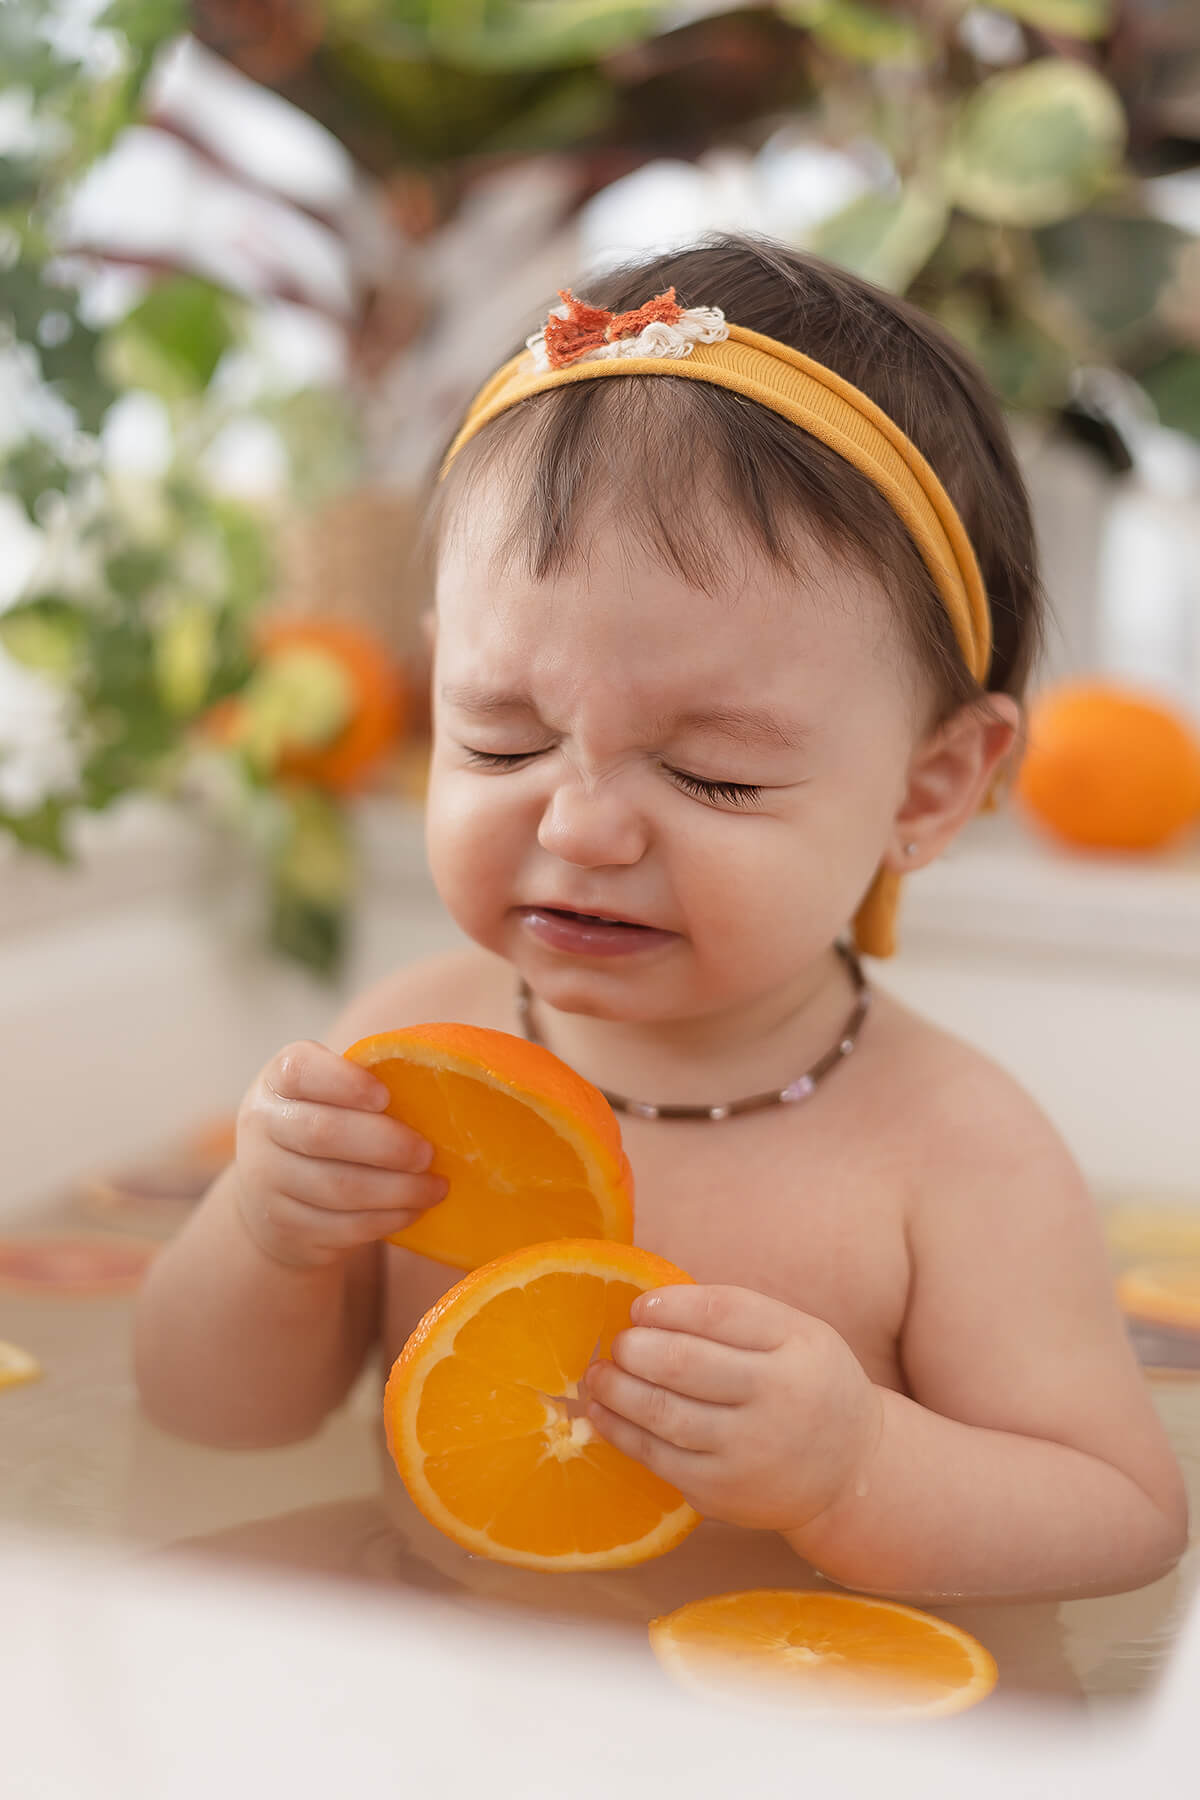 Un bébé dans une baignoire entouré de tranches d'orange, magnifiquement capturé par un talentueux photographe spécialisé dans les portraits d'enfants.